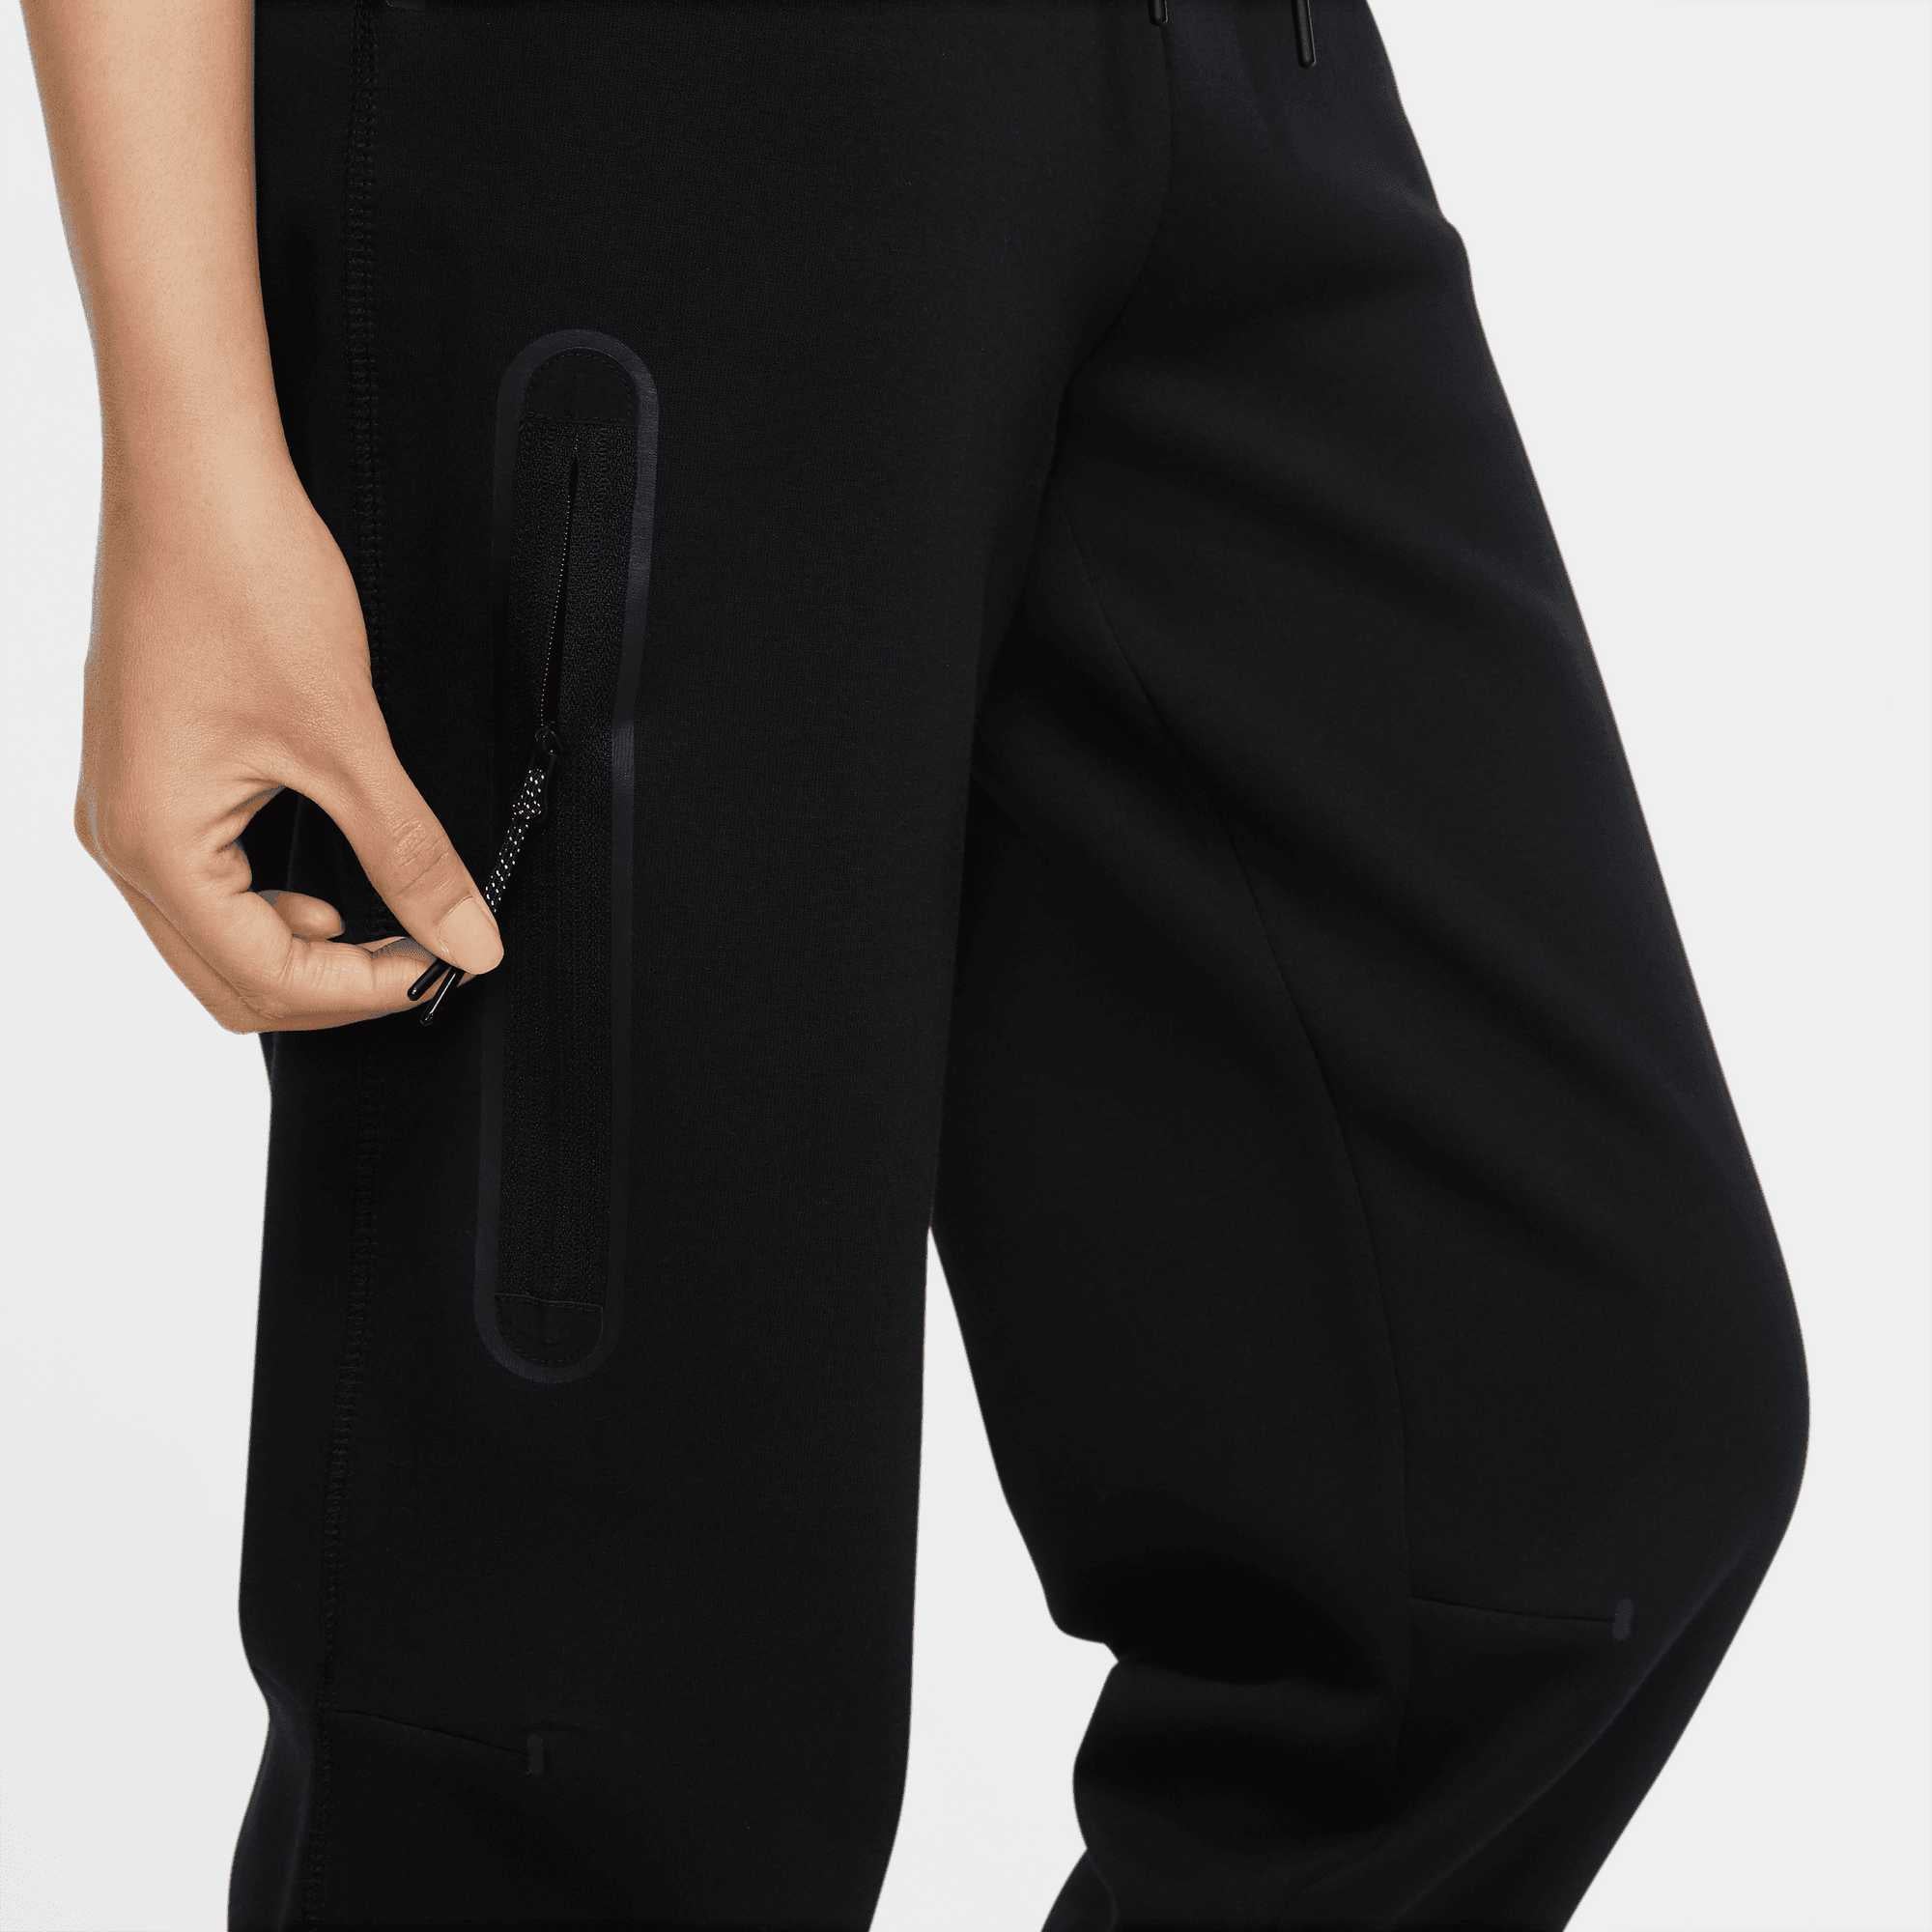 Nike Womens Sportswear Tech Fleece Joggers Pants M CW4292-010